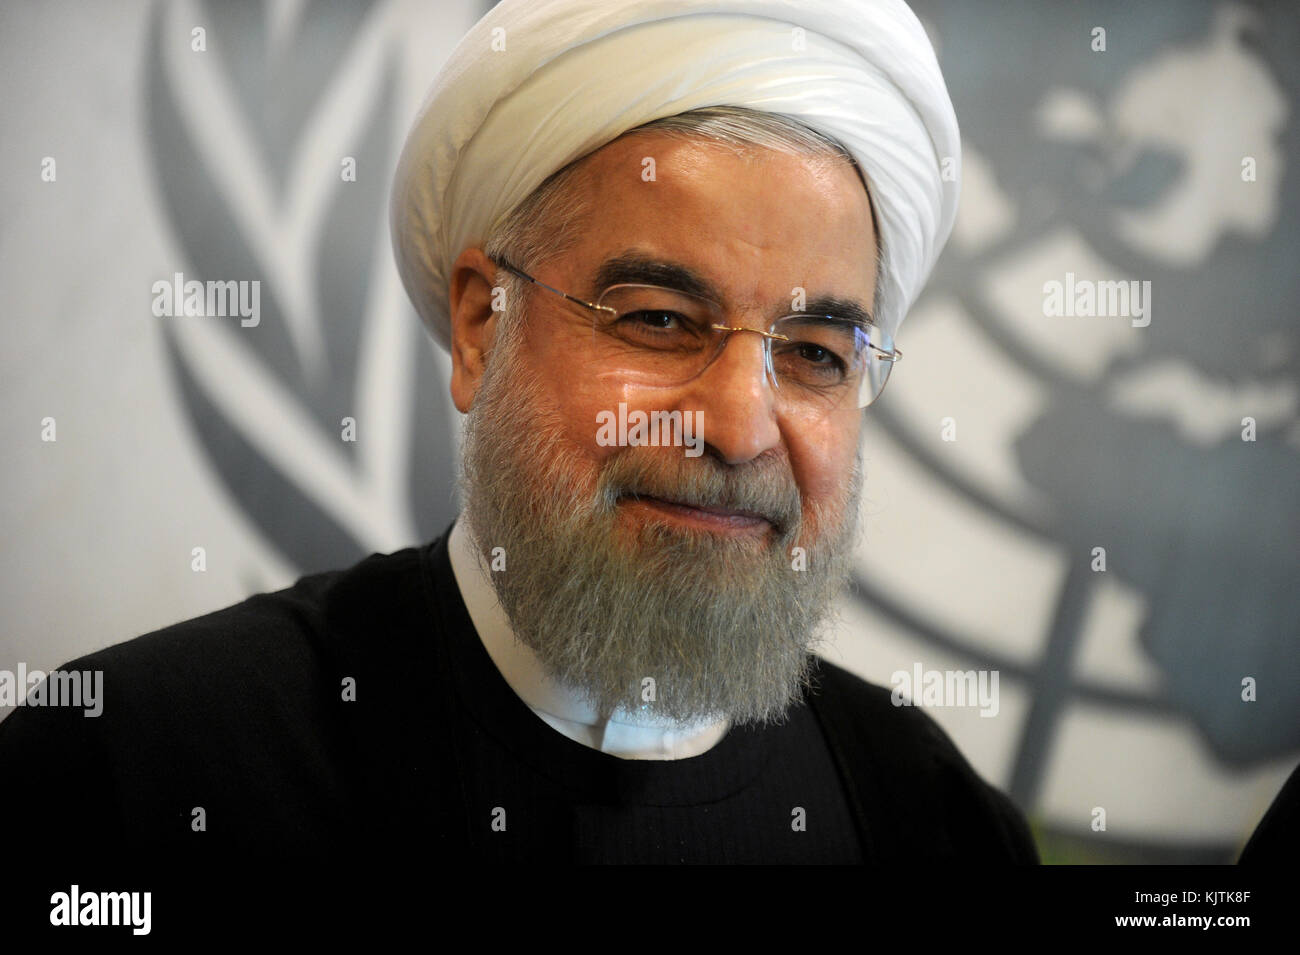 NEW YORK, NY - SEPTEMBRE 26 : le Président de l'Iran, M. Hassan Rouhani, assiste à l'Assemblée générale des Nations Unies le 26 septembre 2015 à New York. Les gens : M. Hassan Rouhani, Président de l'Iran Banque D'Images